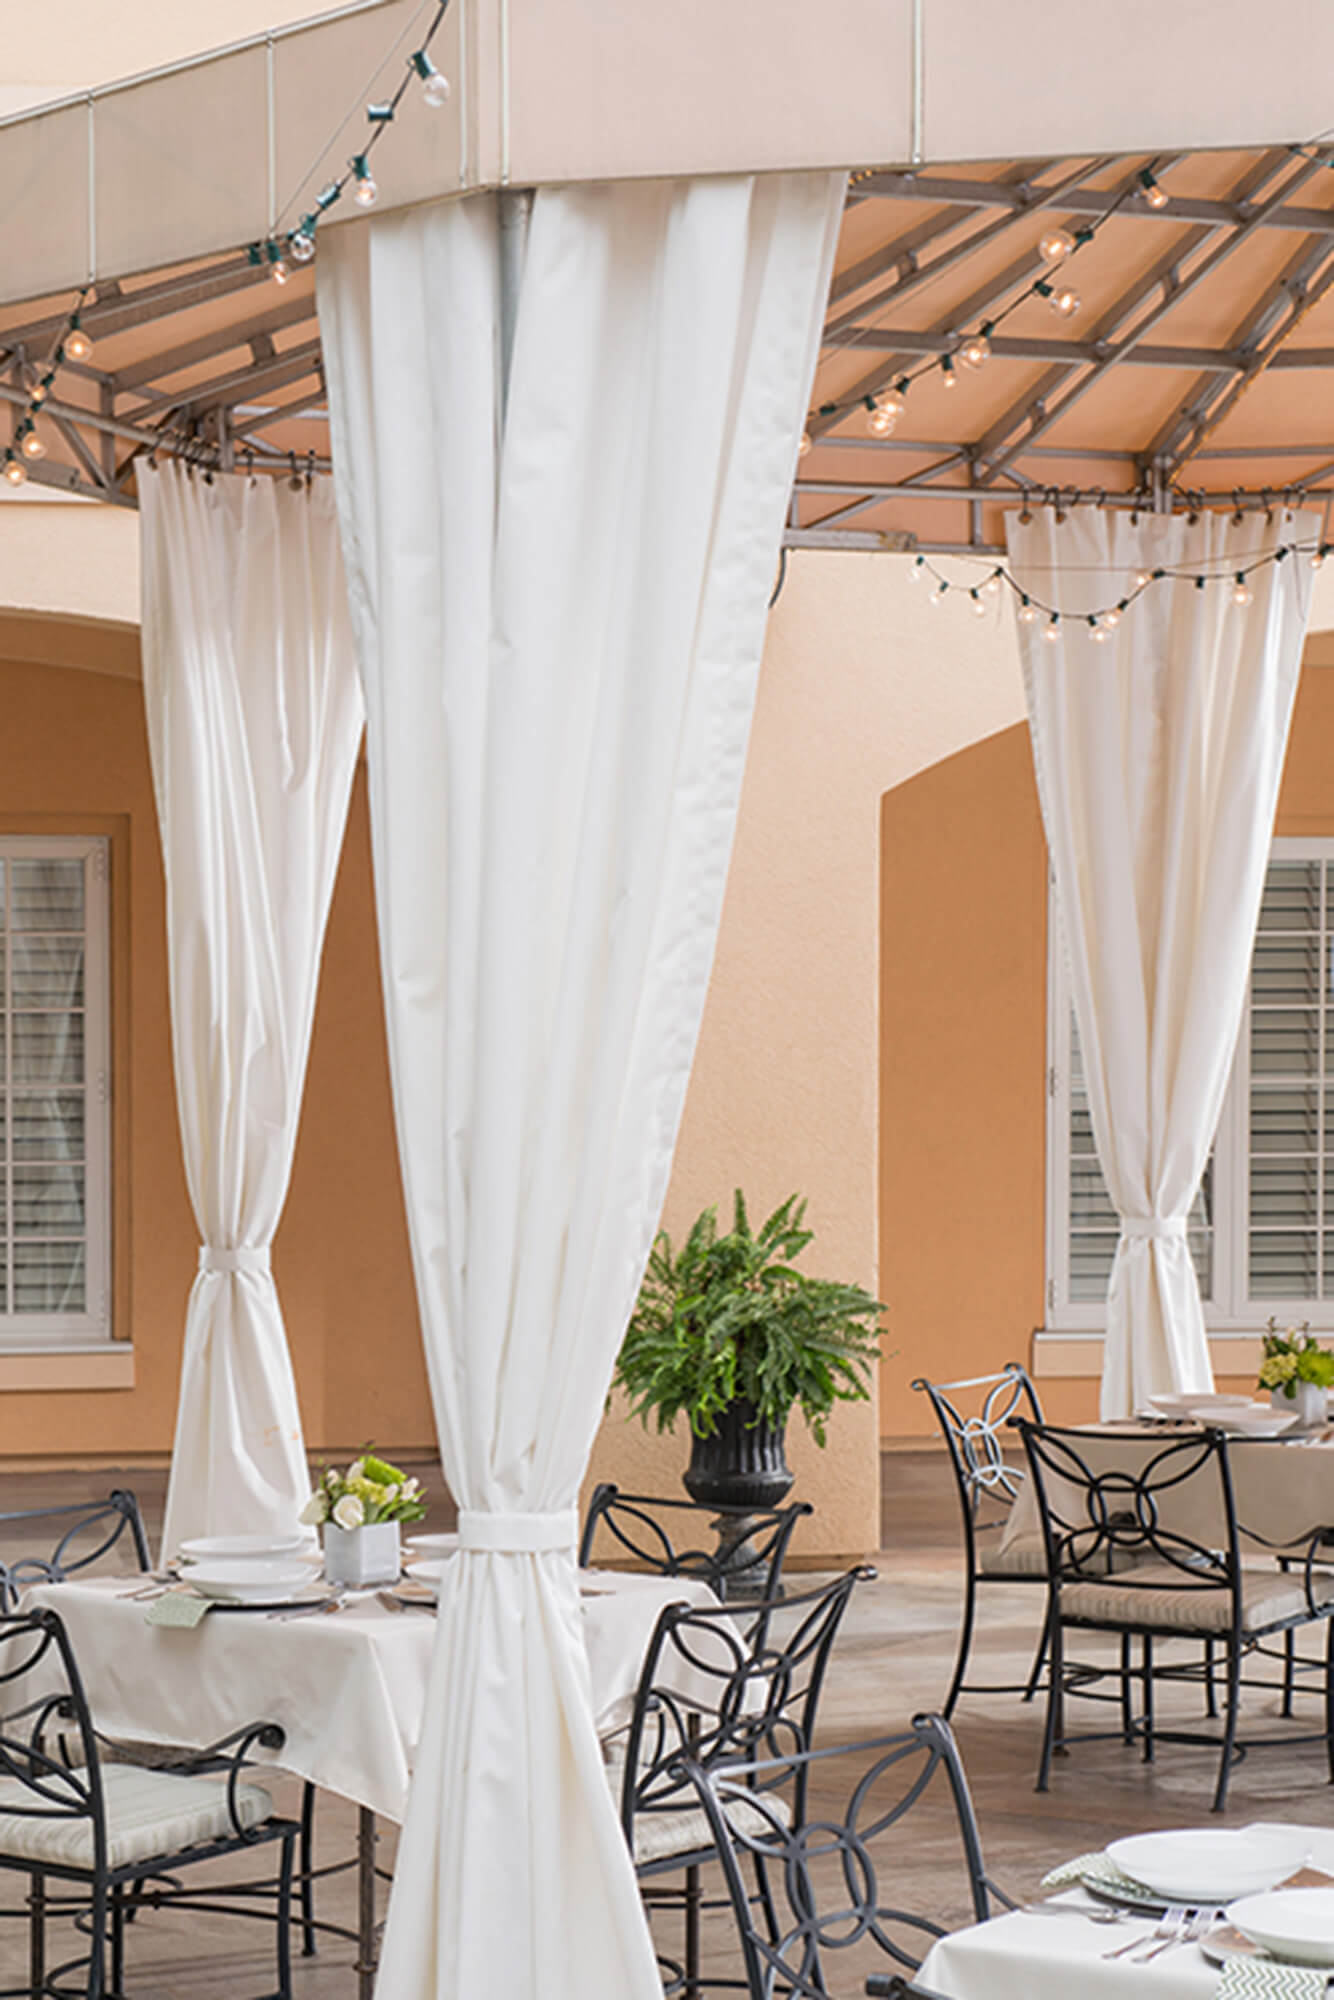 Terras van een restaurant wordt beschut door een fixed frame zonwering van beige Sunbrella Clarity-stof.